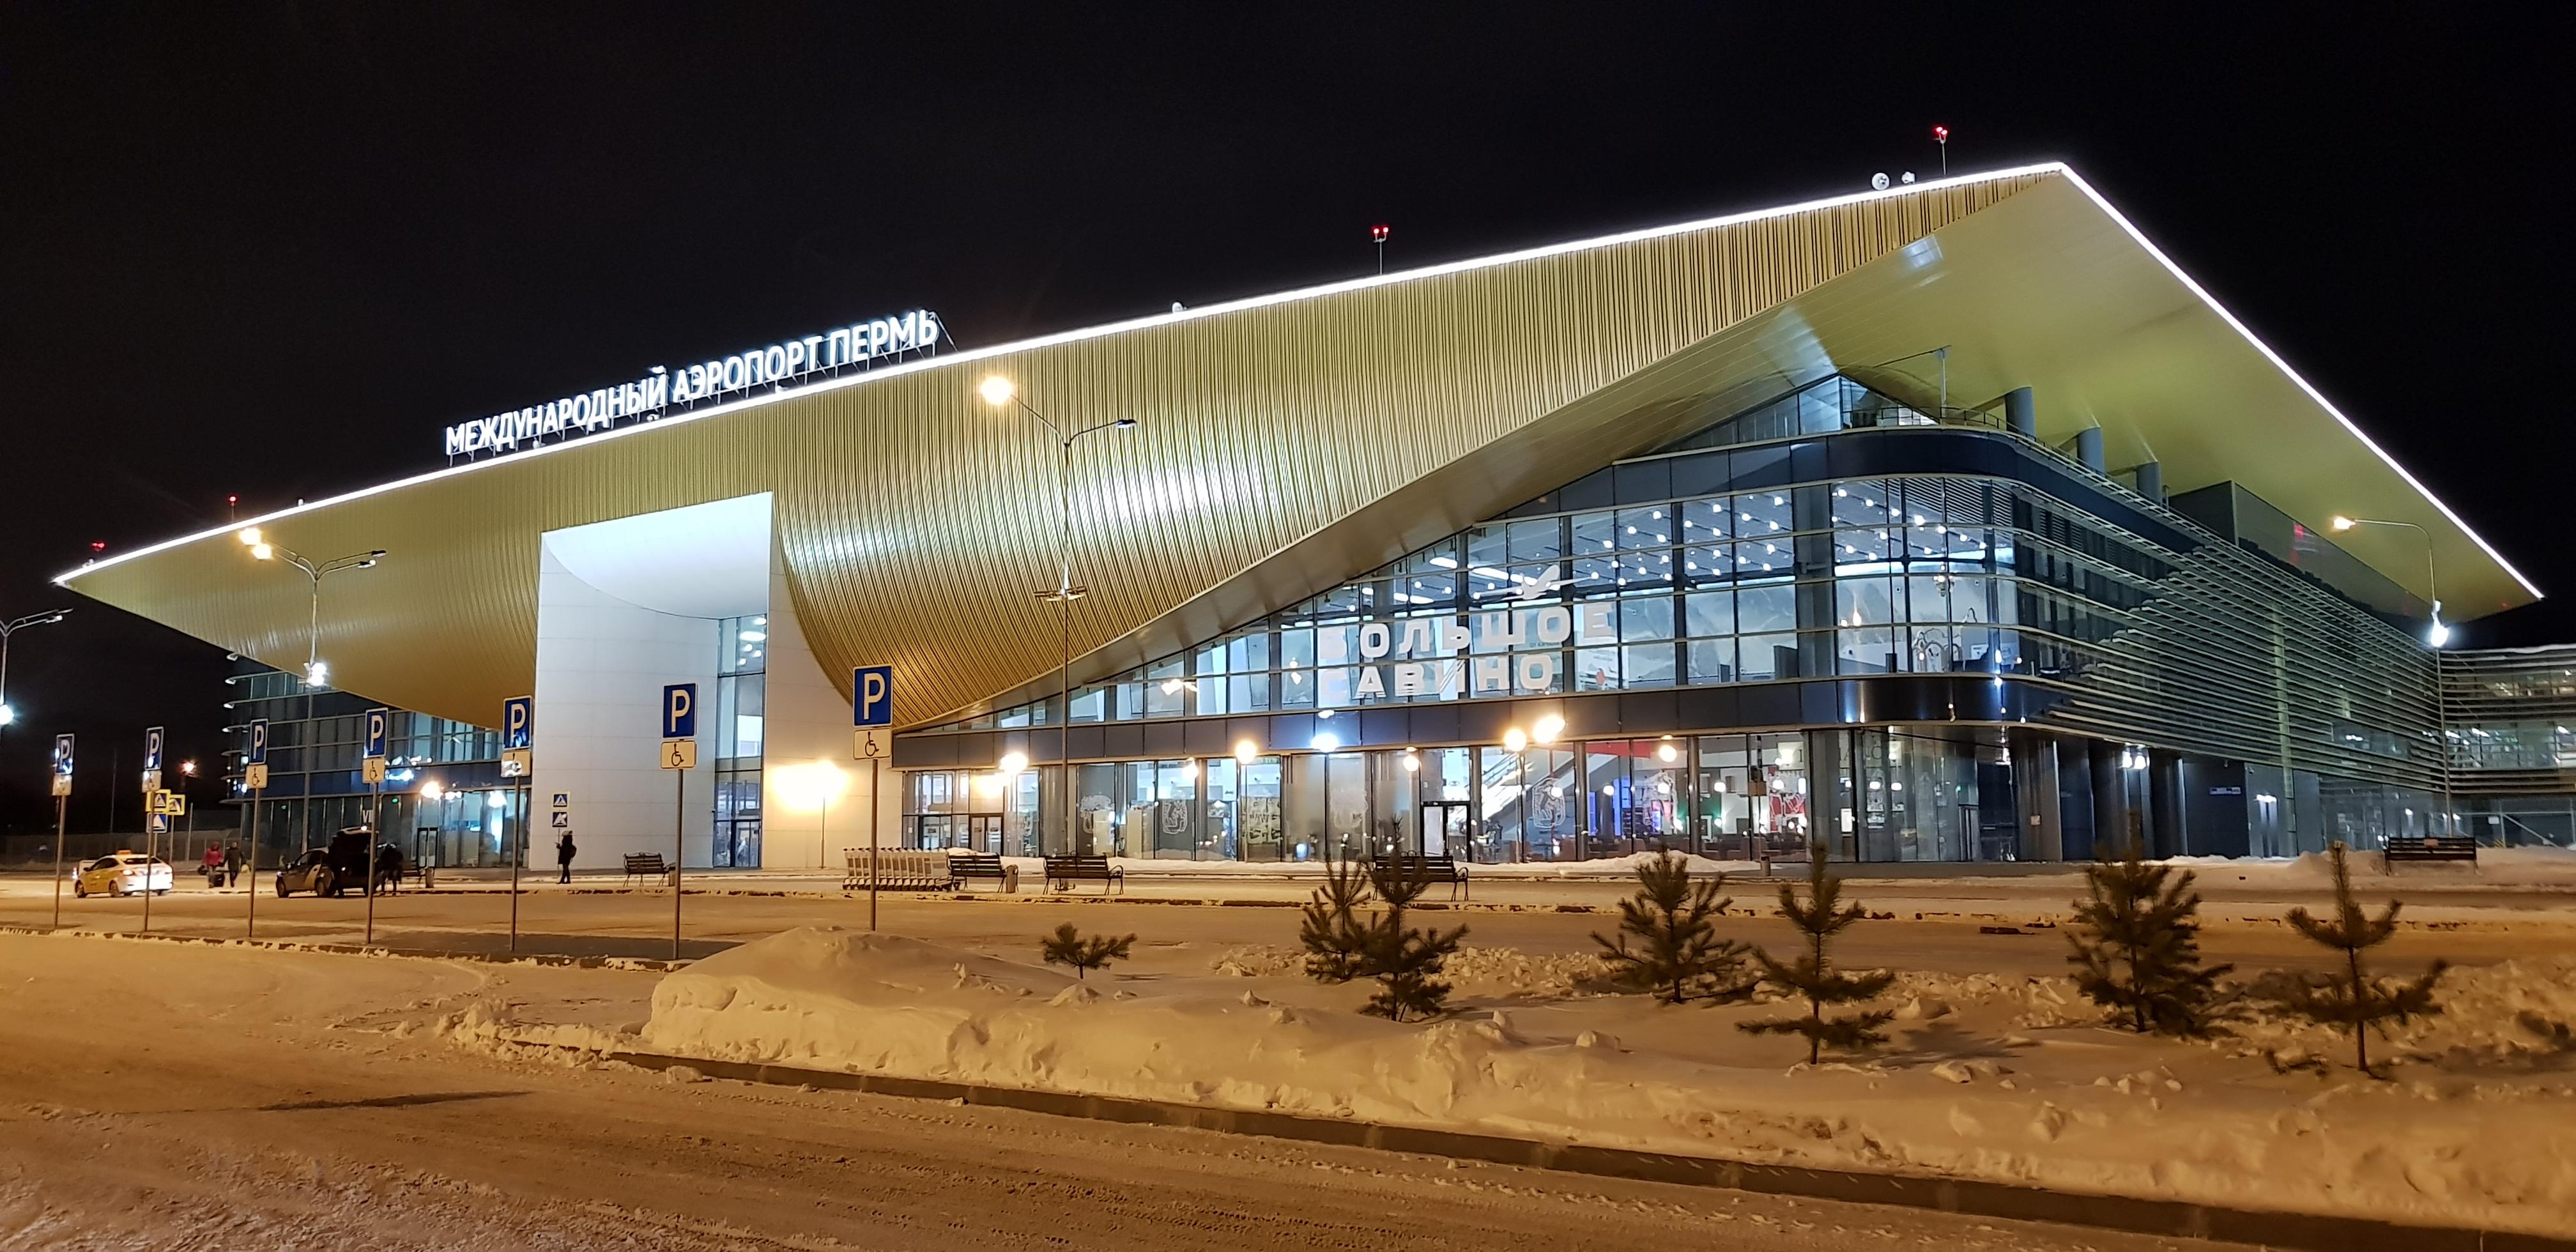 Здание пермского аэропорта подсветили сотнями ламп и прожекторов